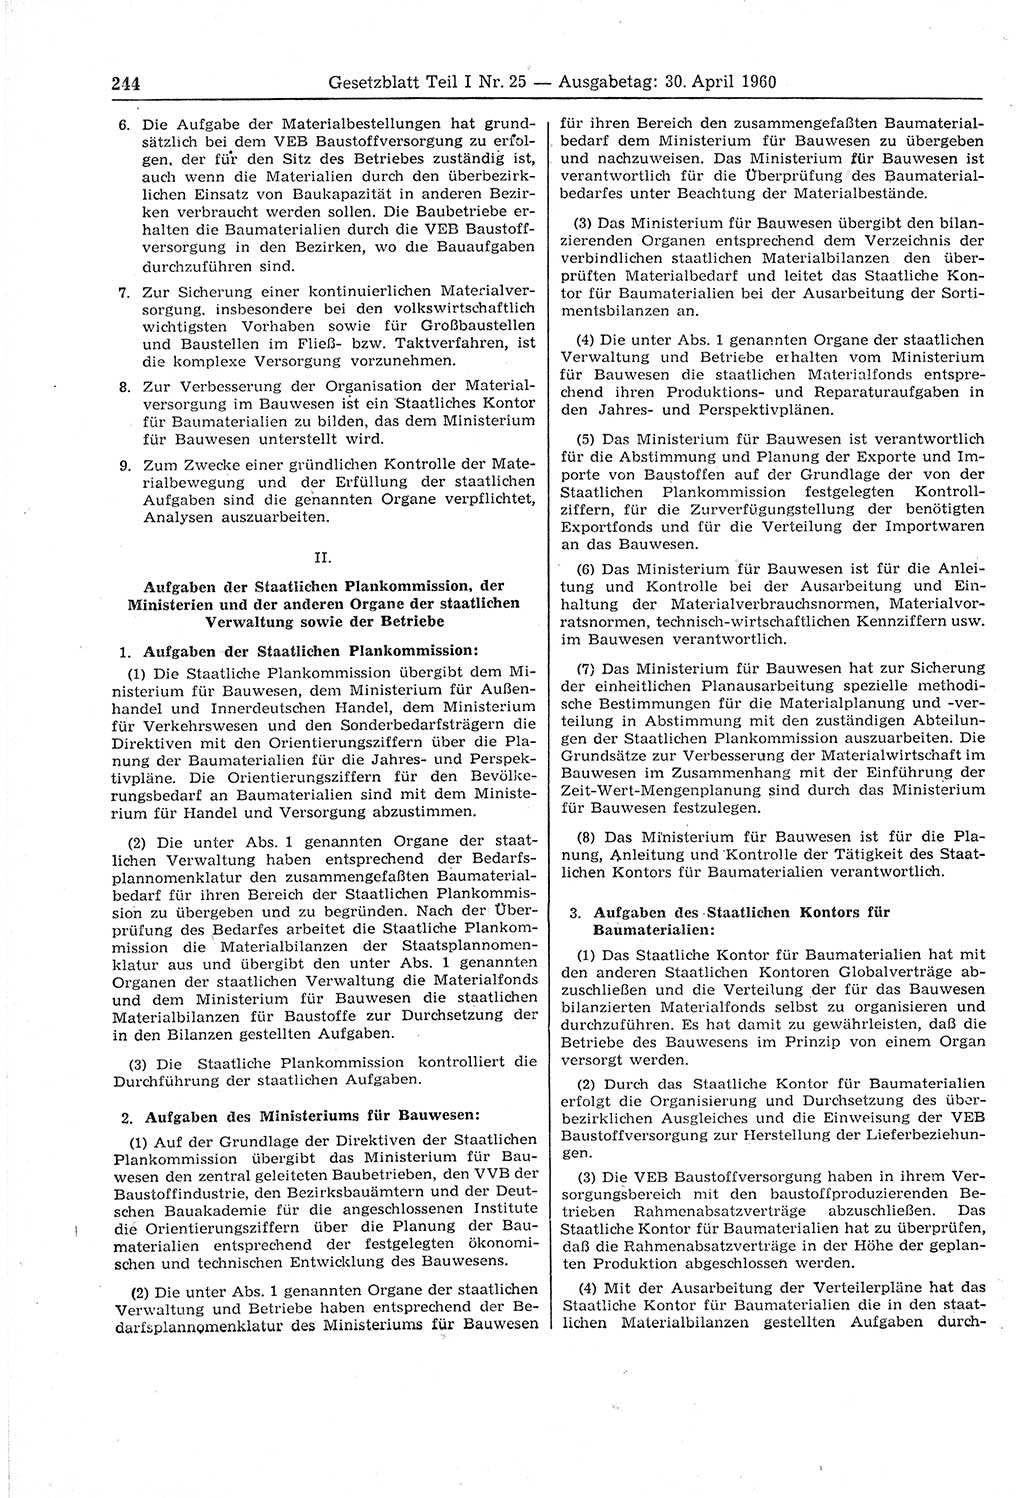 Gesetzblatt (GBl.) der Deutschen Demokratischen Republik (DDR) Teil Ⅰ 1960, Seite 244 (GBl. DDR Ⅰ 1960, S. 244)